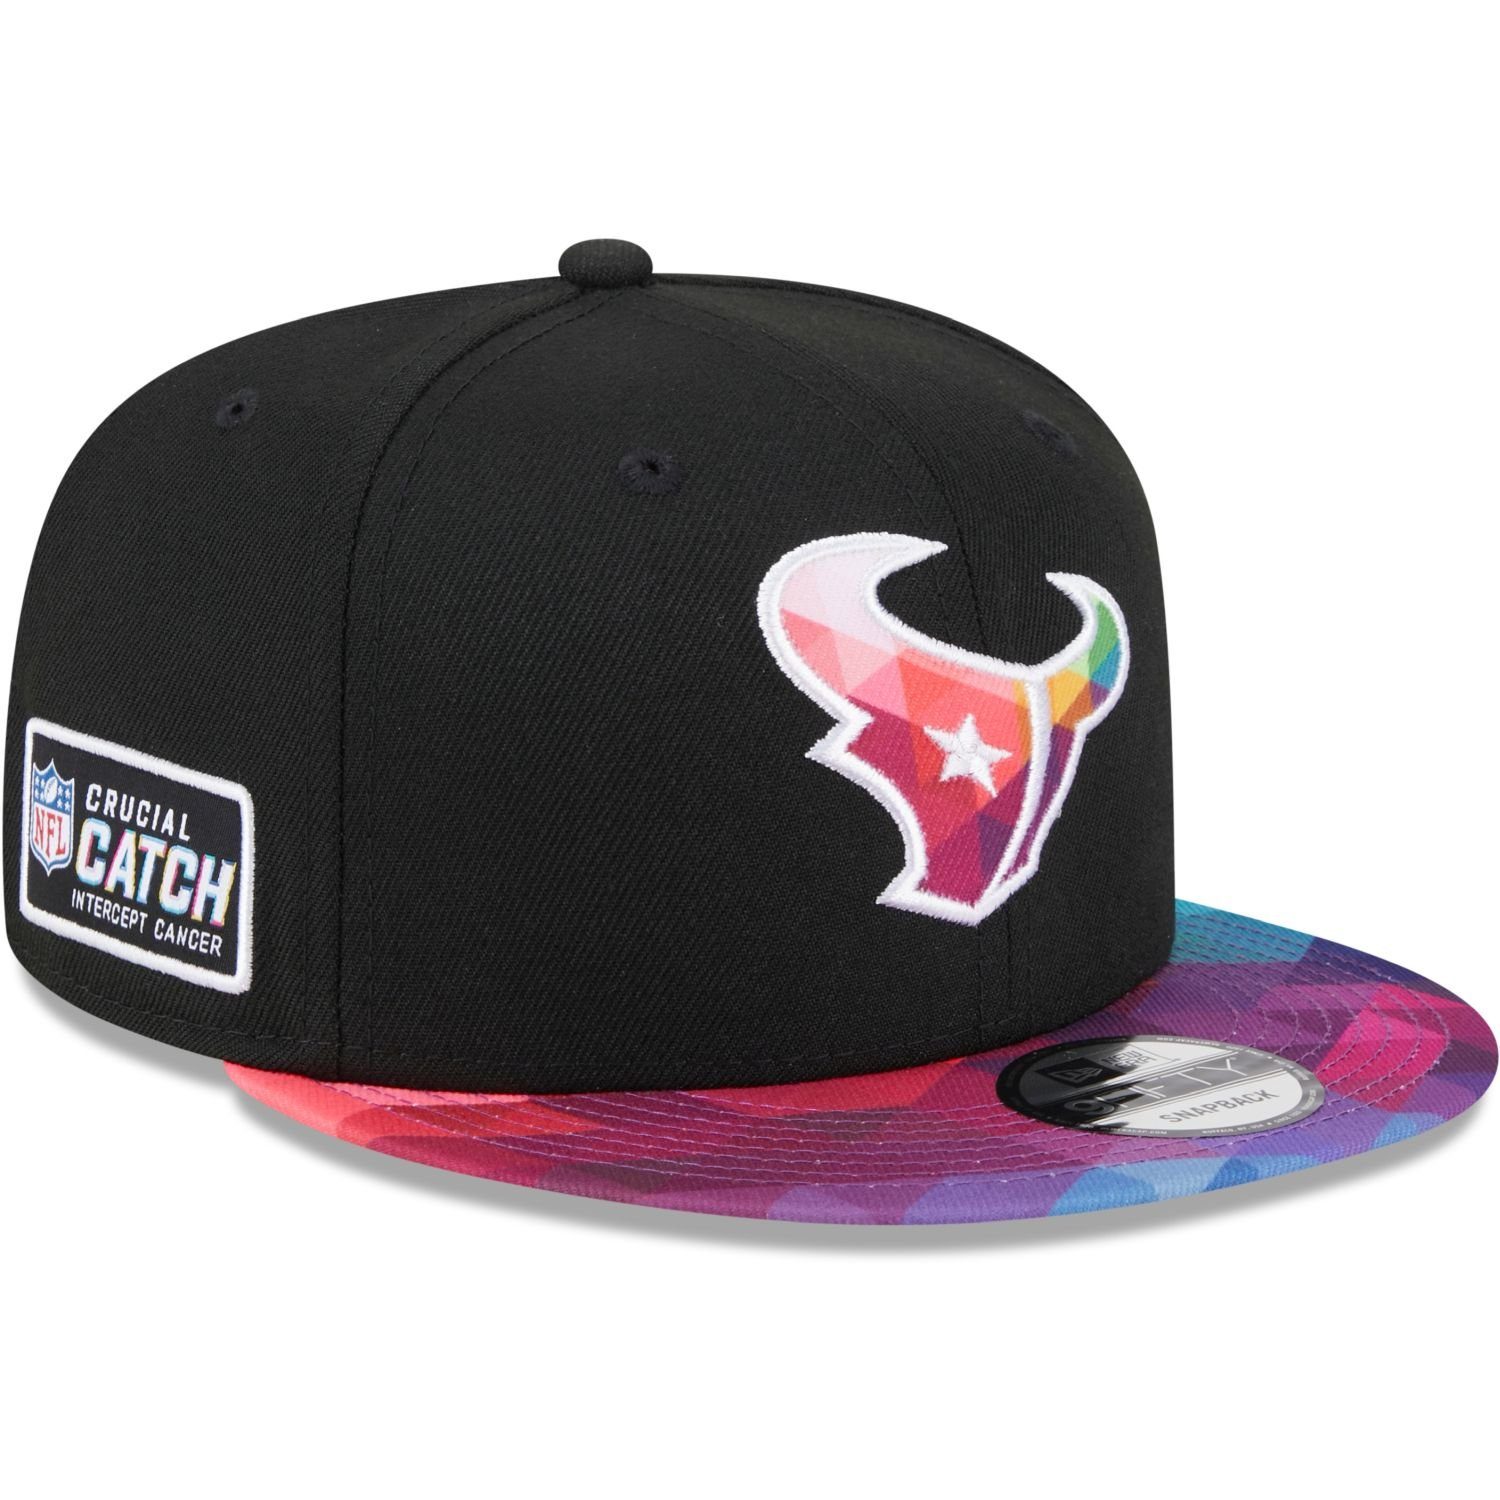 New Era Snapback Cap 9FIFTY CRUCIAL Houston Texans NFL CATCH Teams